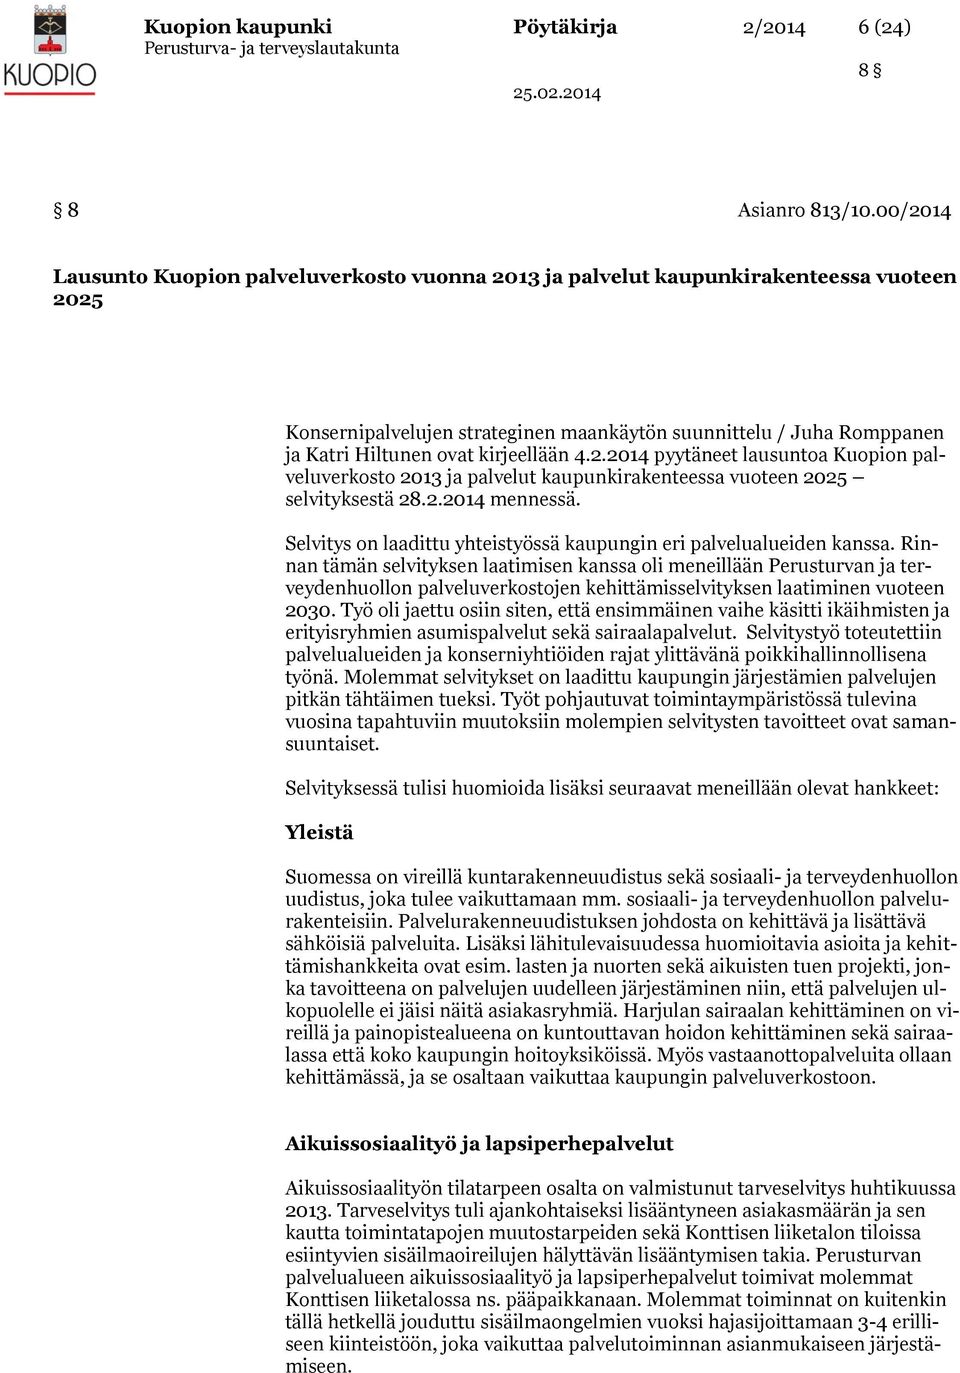 kirjeellään 4.2.2014 pyytäneet lausuntoa Kuopion palveluverkosto 2013 ja palvelut kaupunkirakenteessa vuoteen 2025 selvityksestä 28.2.2014 mennessä.